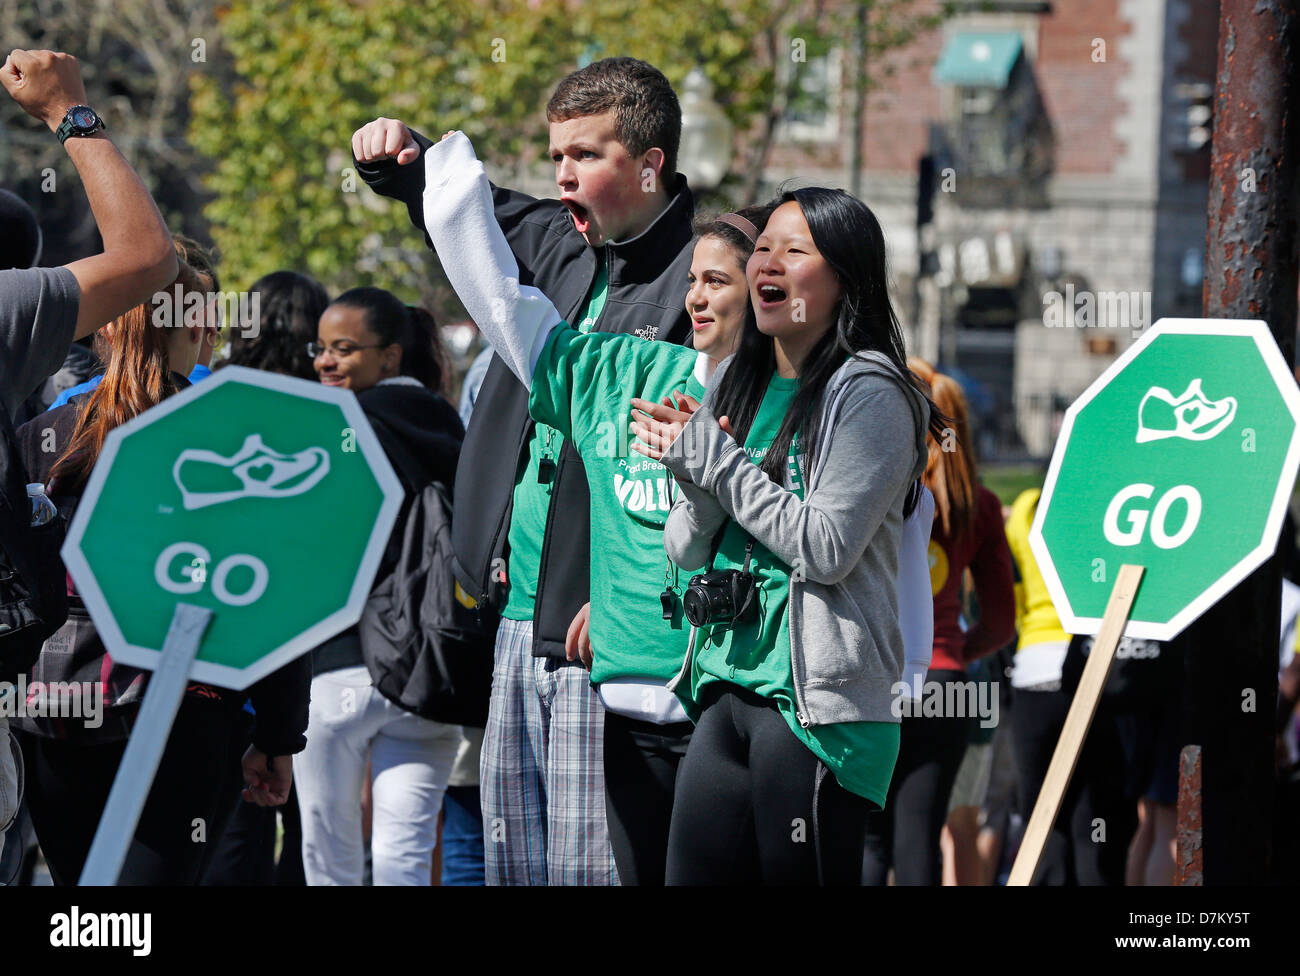 Encourager les bénévoles marcheurs à la Marche pour la Faim Charity Event, Boston, Massachusetts Banque D'Images